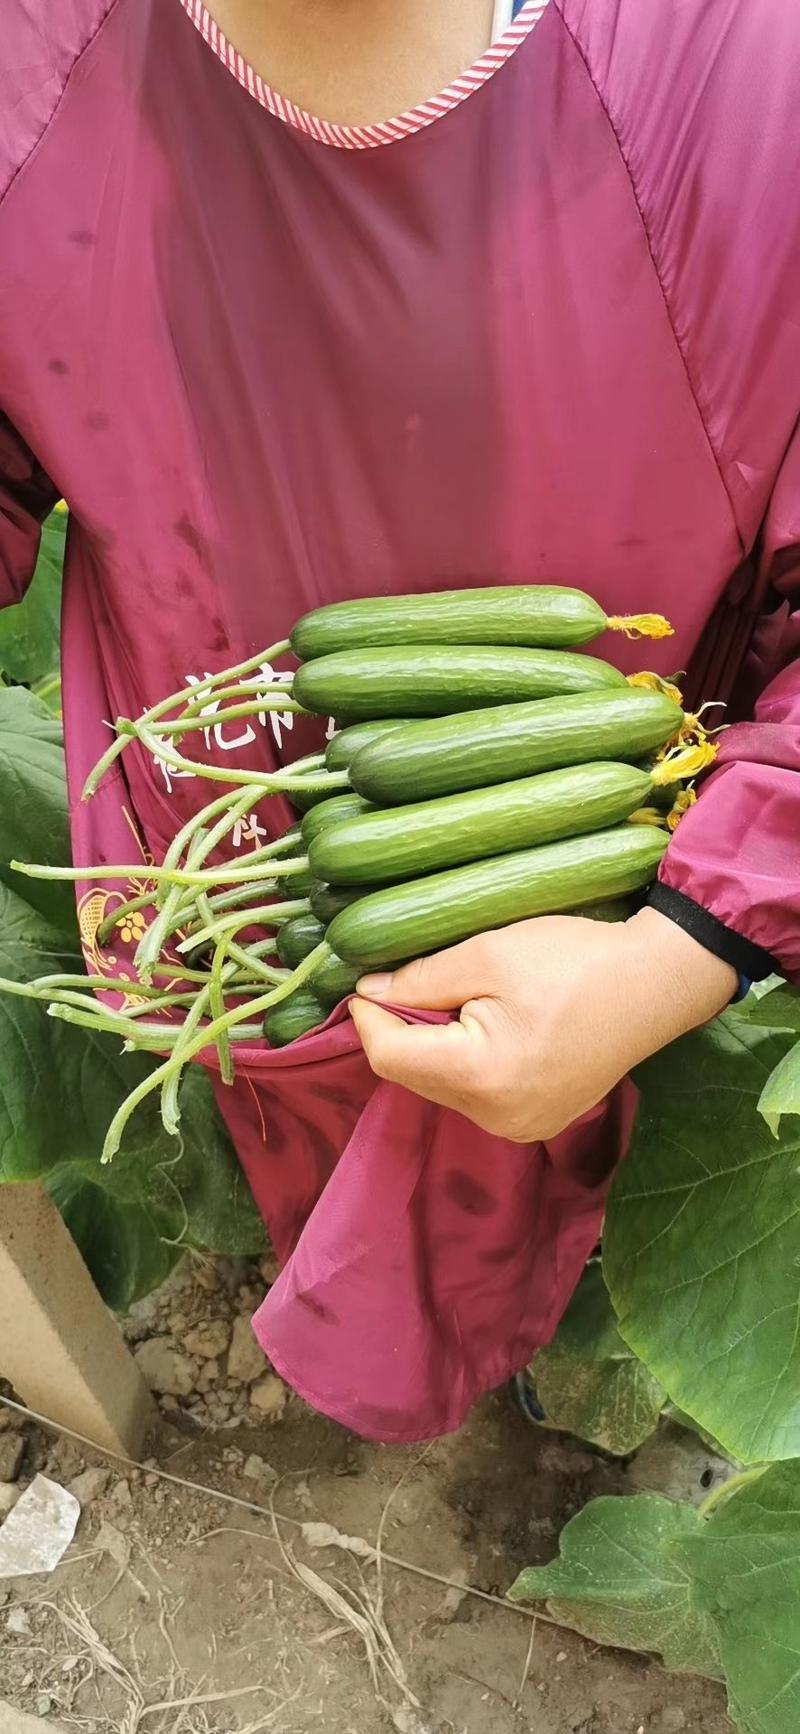 林孚868无刺水果小黄瓜种子连续拉瓜产量高